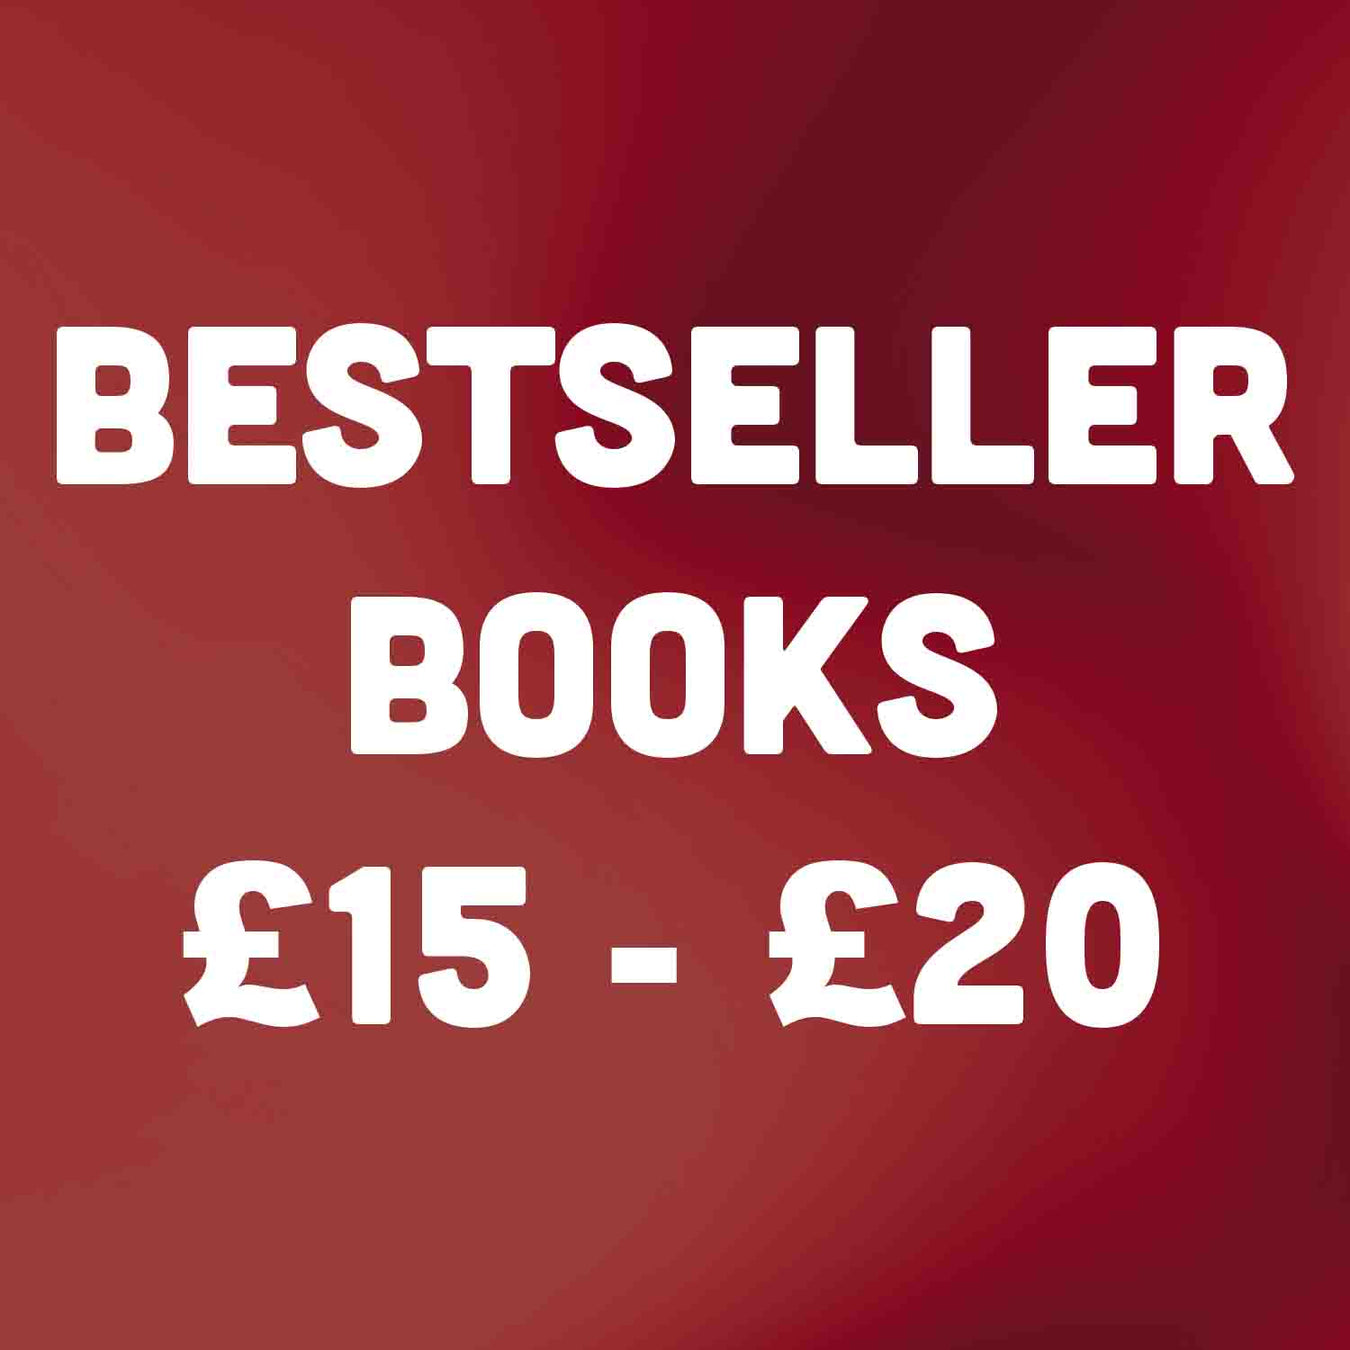 Bestseller Books £15 - £20